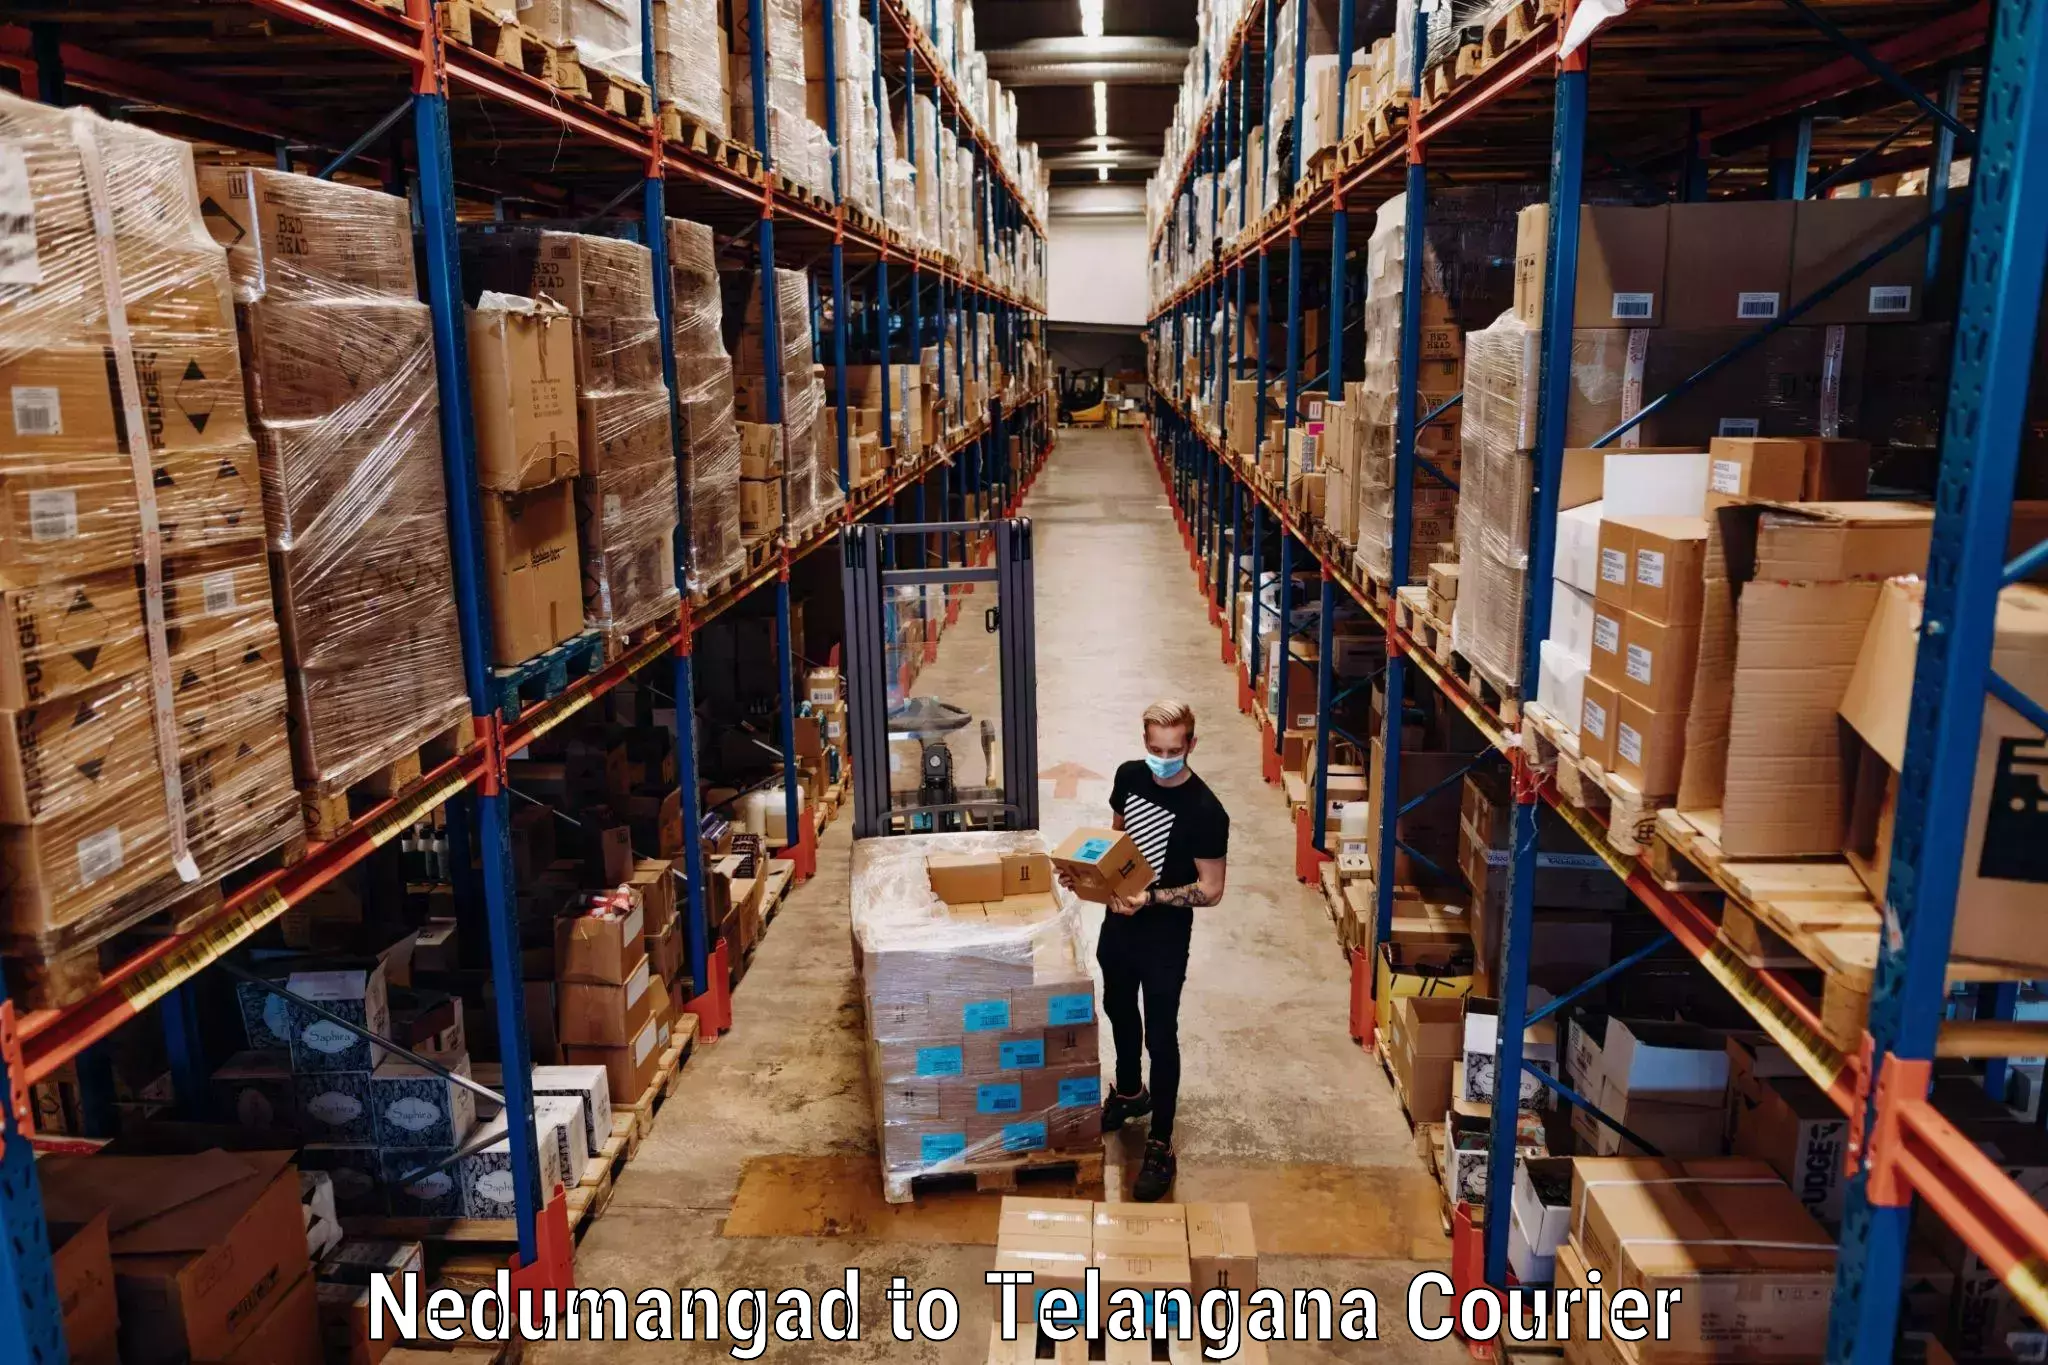 Luggage courier logistics Nedumangad to Professor Jayashankar Telangana State Agricultural University Hyderabad